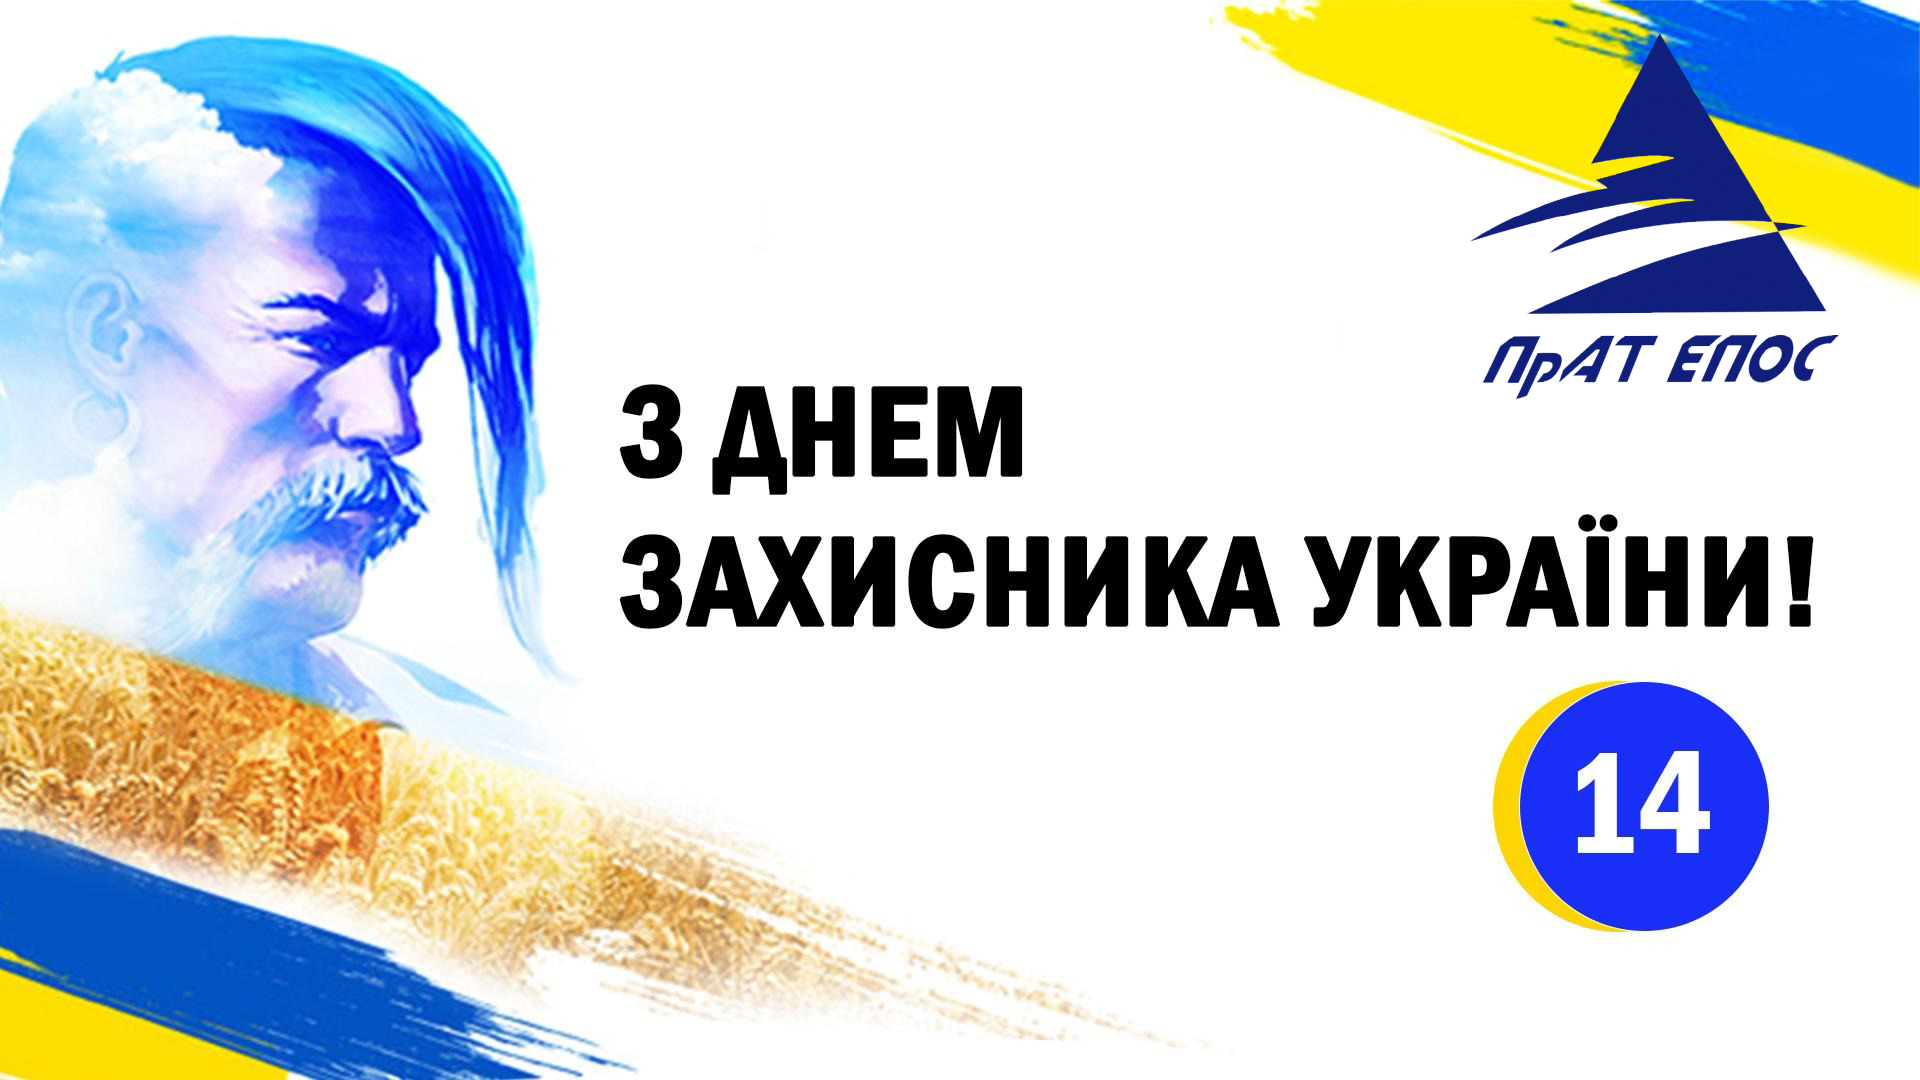 Колектив ПрАТ «Епос» вітає Вас з чудовим святом - Днем захисника України.